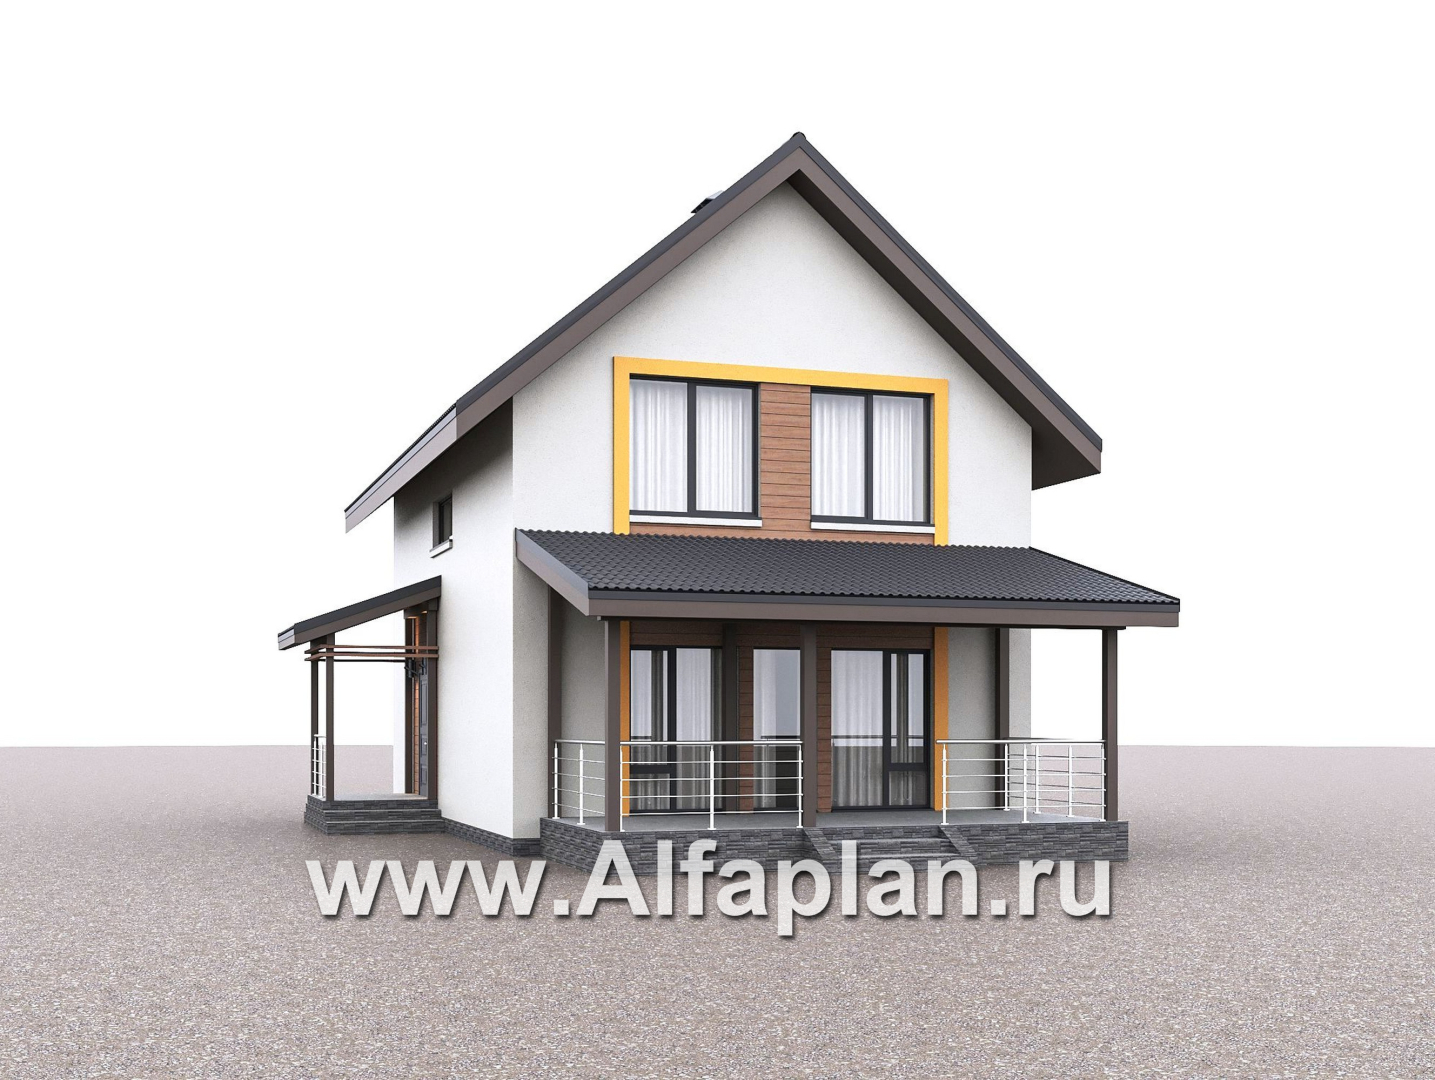 «Викинг» - проект дома, 2 этажа, с сауной и с террасой, в скандинавском стиле - дизайн дома №3